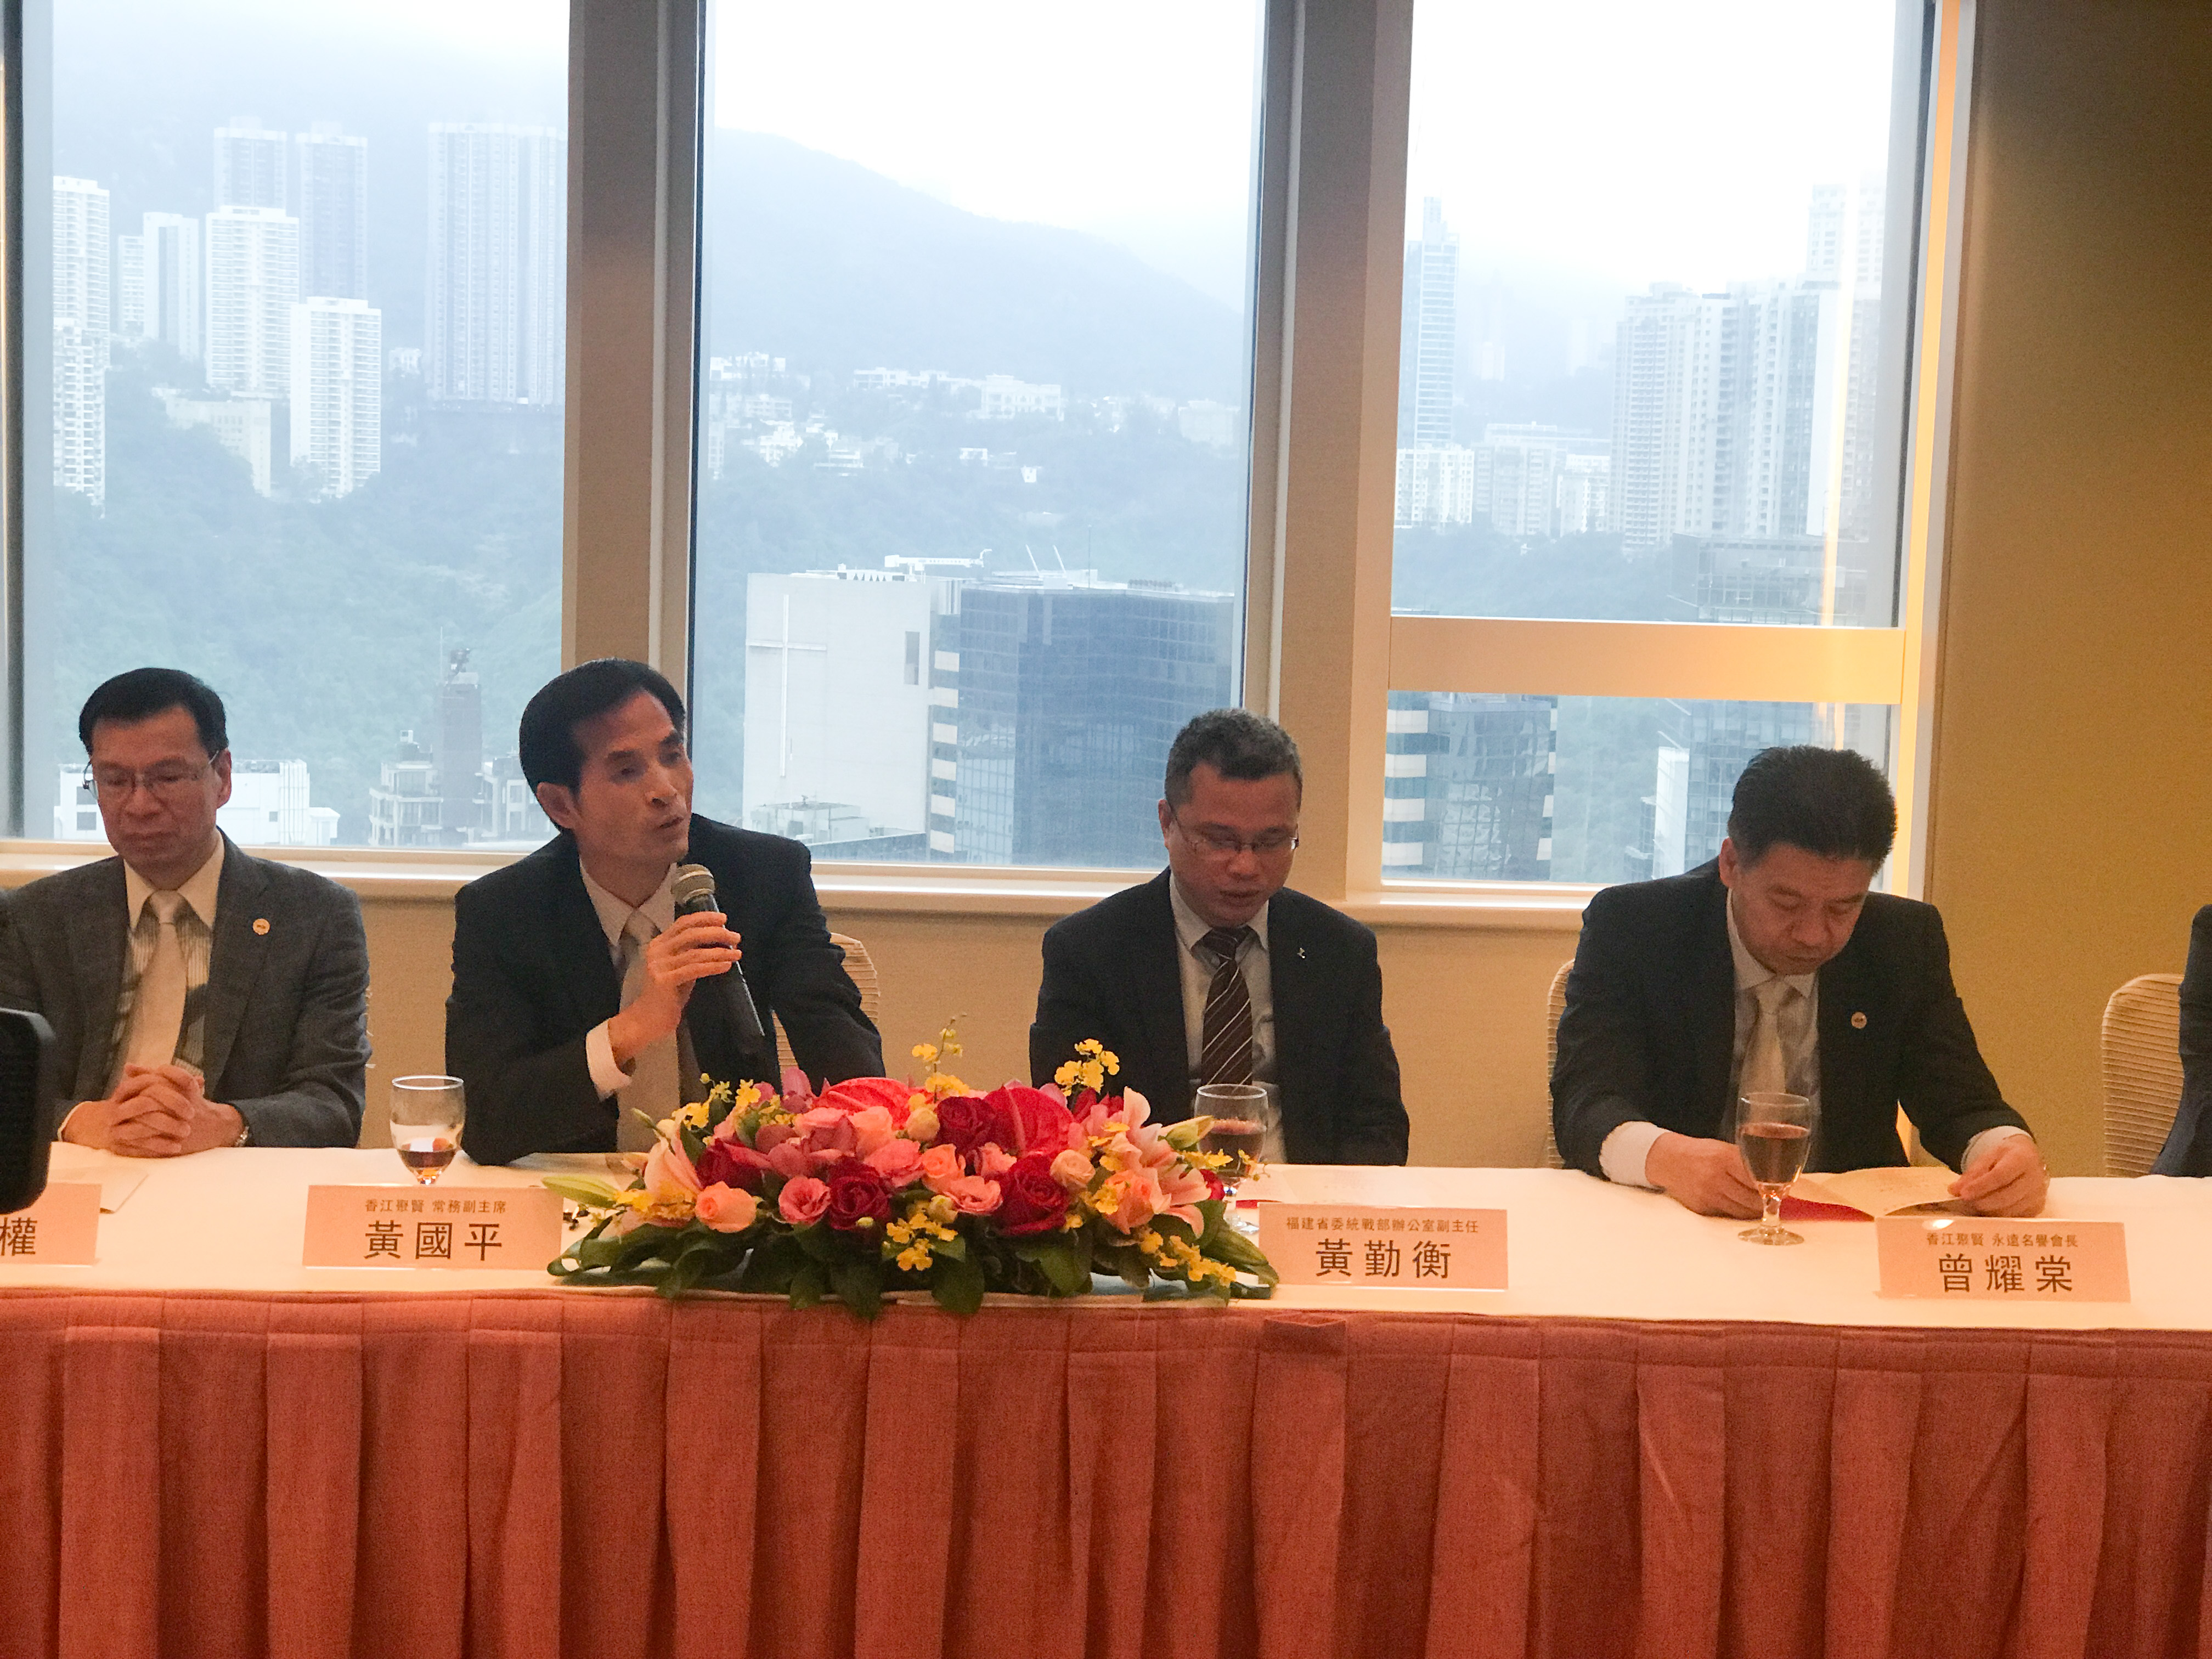 香港中產專業人士發展與機遇座談會